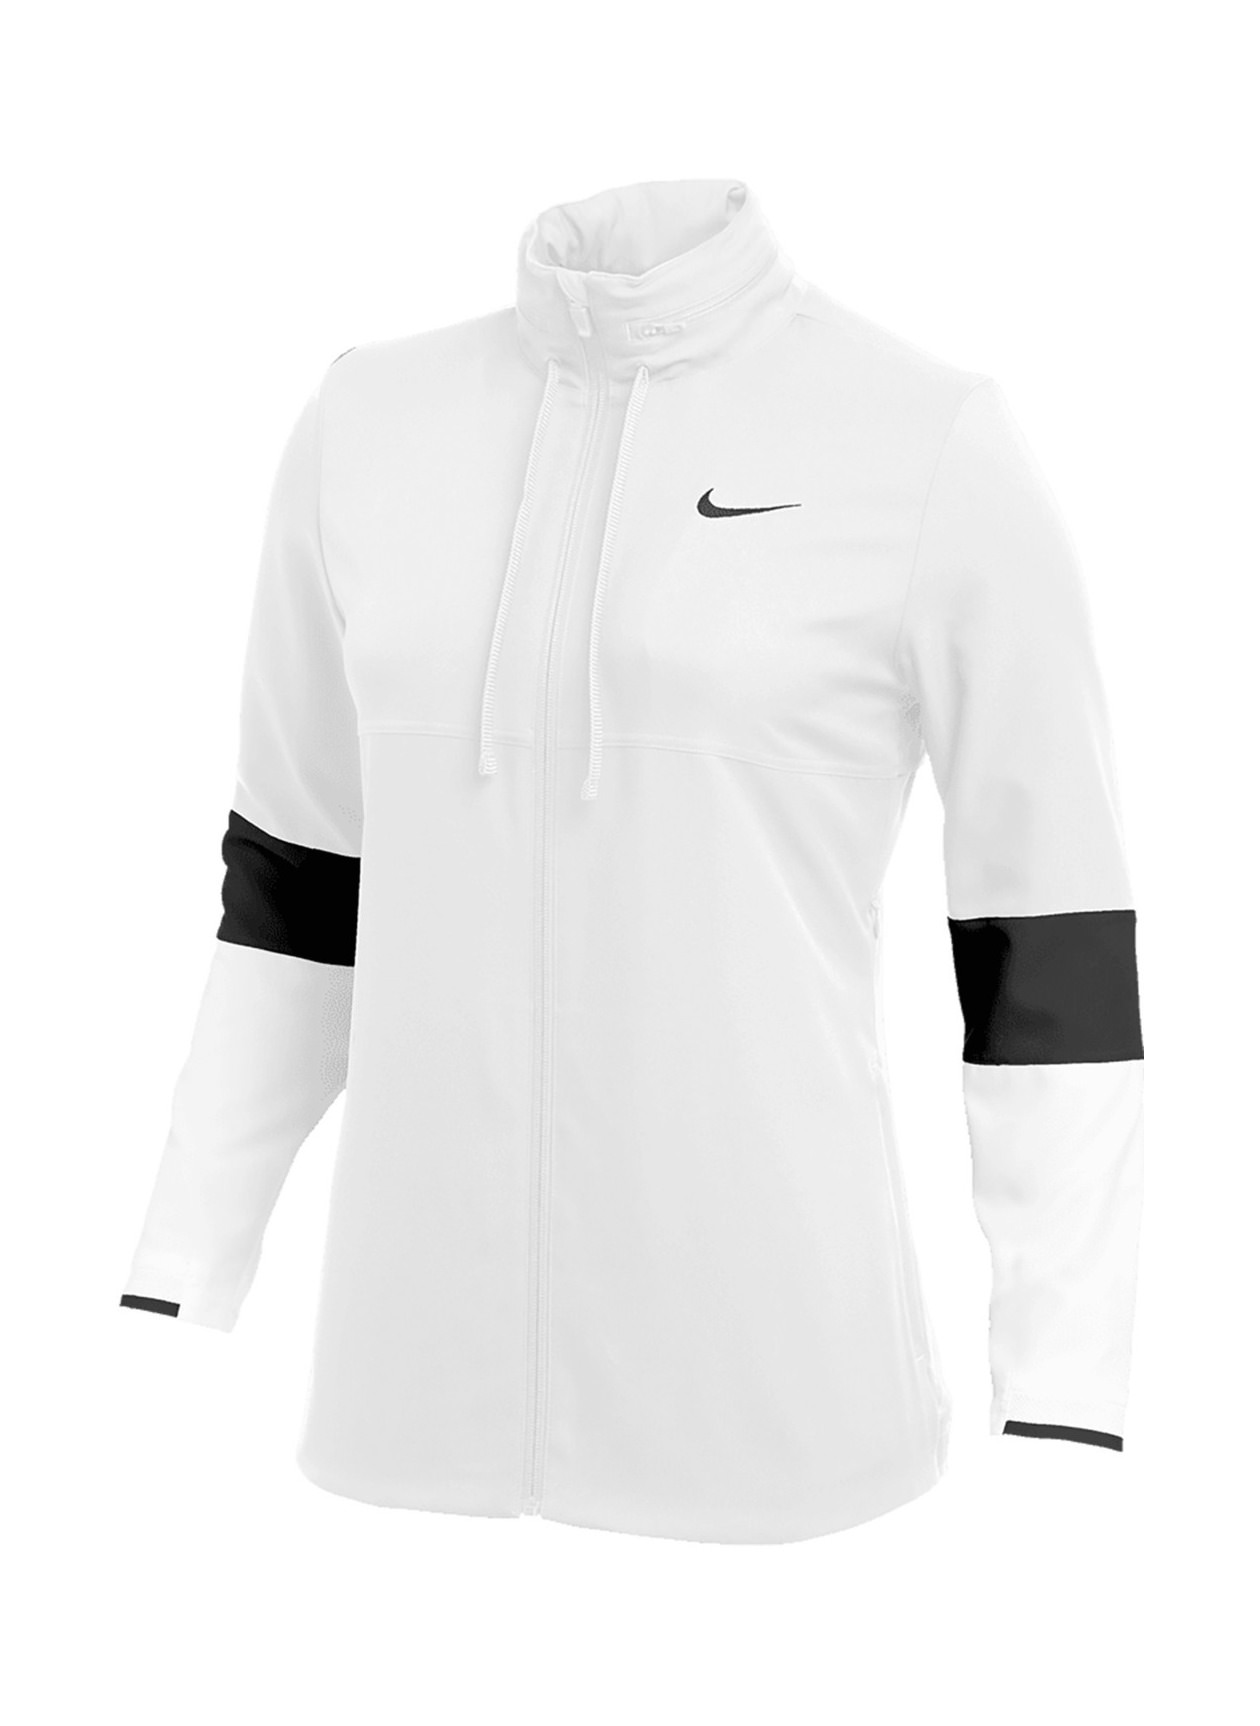 Logo Nike Women's White / Black Dri-FIT Jacket